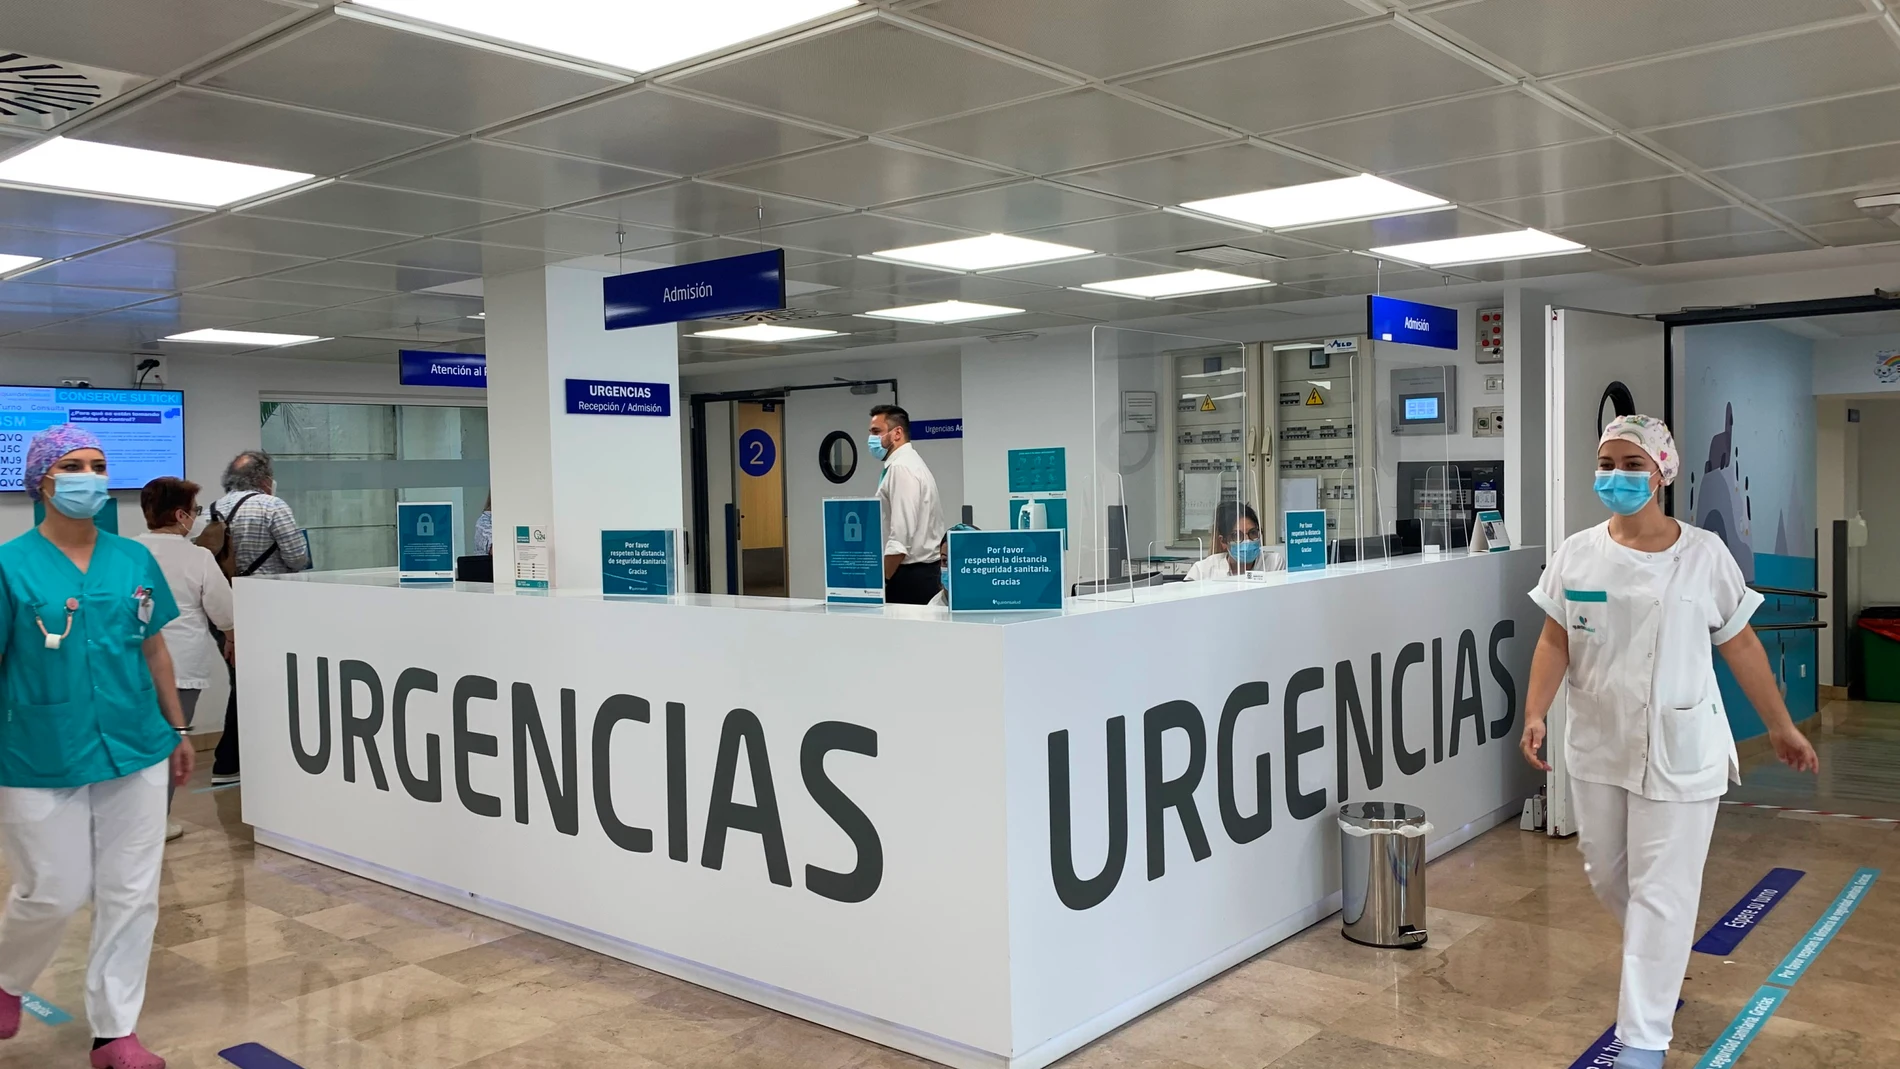 Urgencias del Hospital Quironsalud Sagrado Corazón de Sevilla